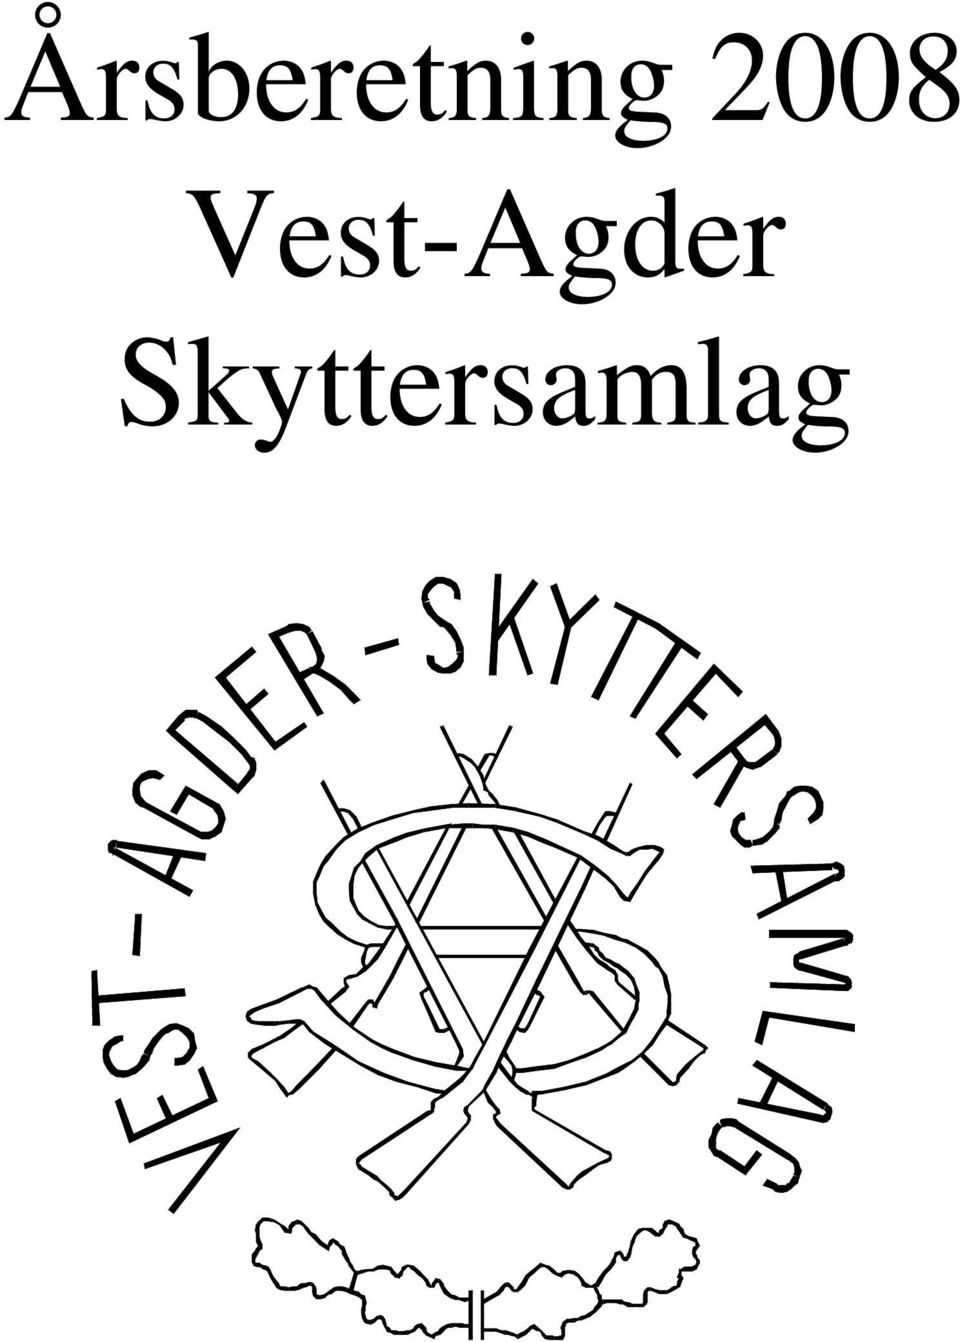 Årsberetning 2008 Vest-Agder Skyttersamlag - PDF Free Download